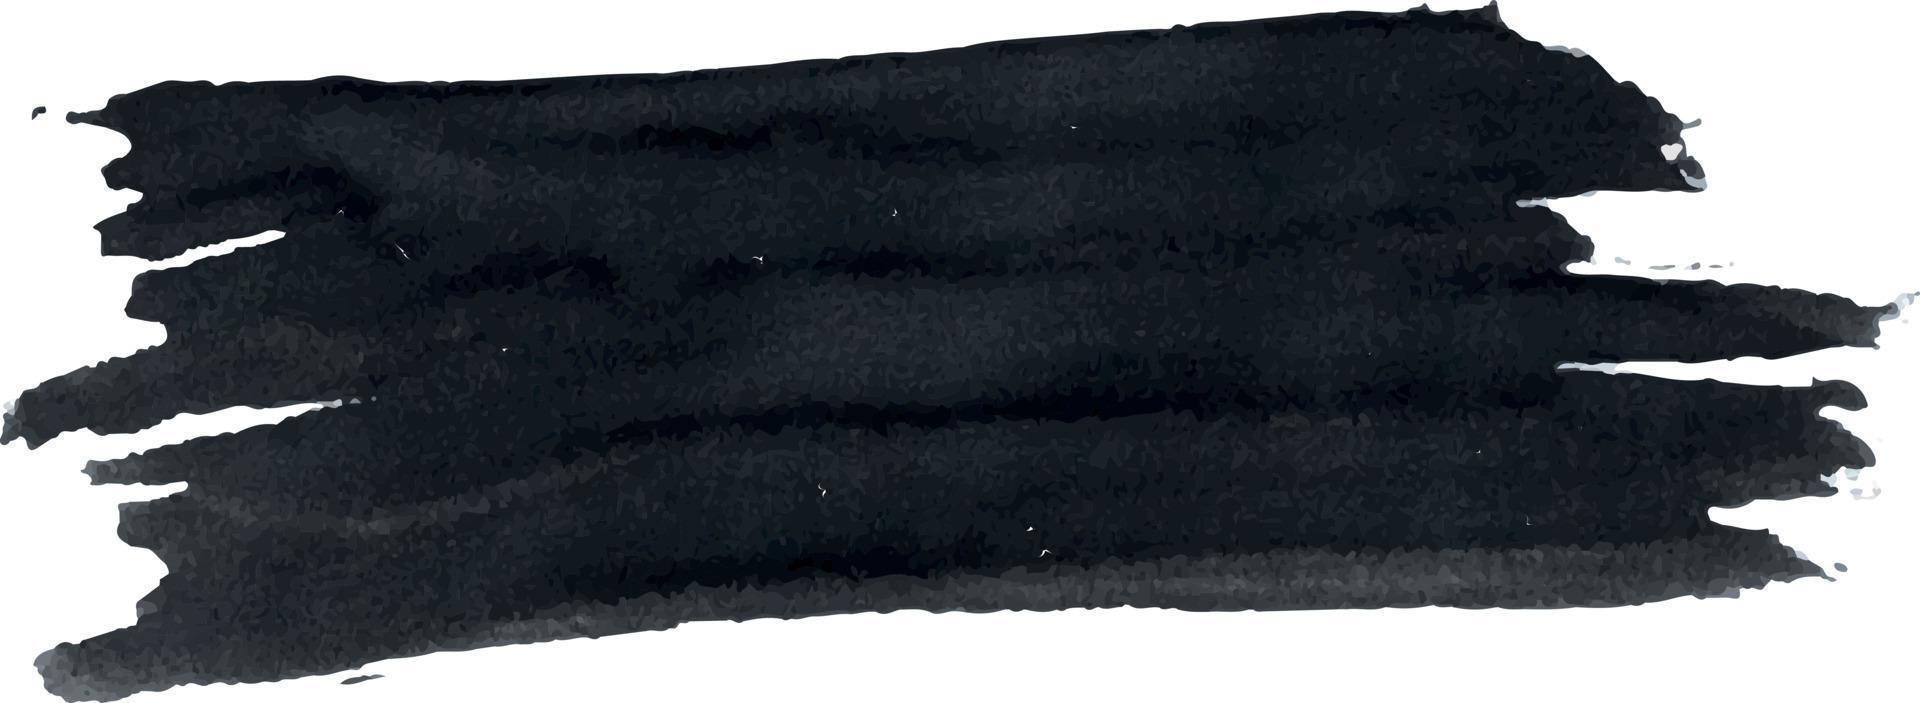 Bürste Schlaganfall mit Aquarell malen. Grunge. schwarz Farbe. hoch Qualität Vektor Illustration.